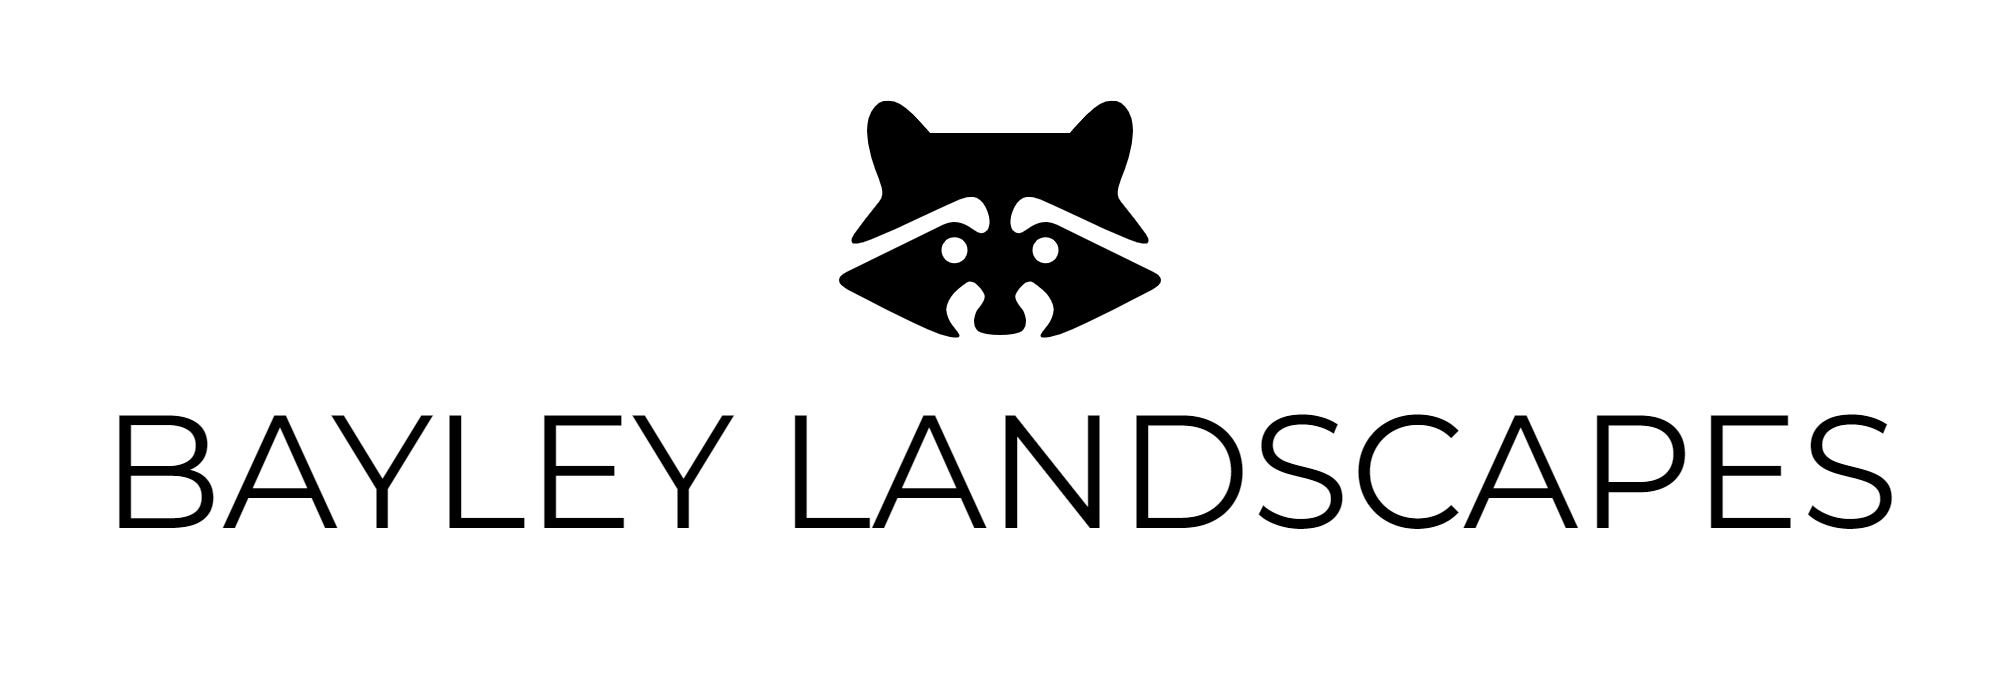 BAYLEY LANDSCAPES-logo-black